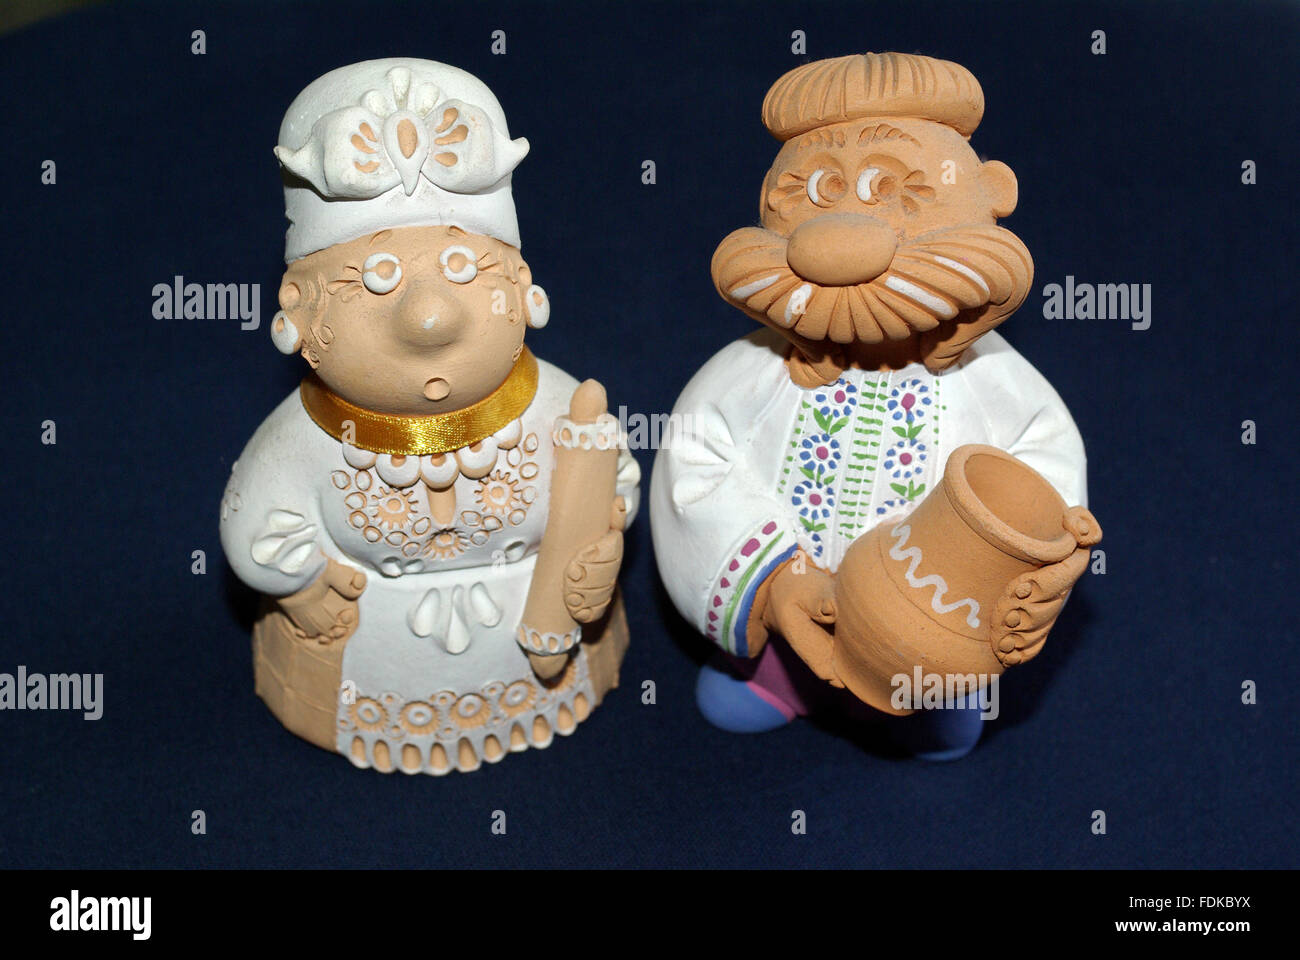 Souvenirs de l'Ukraine en terre cuite Banque D'Images